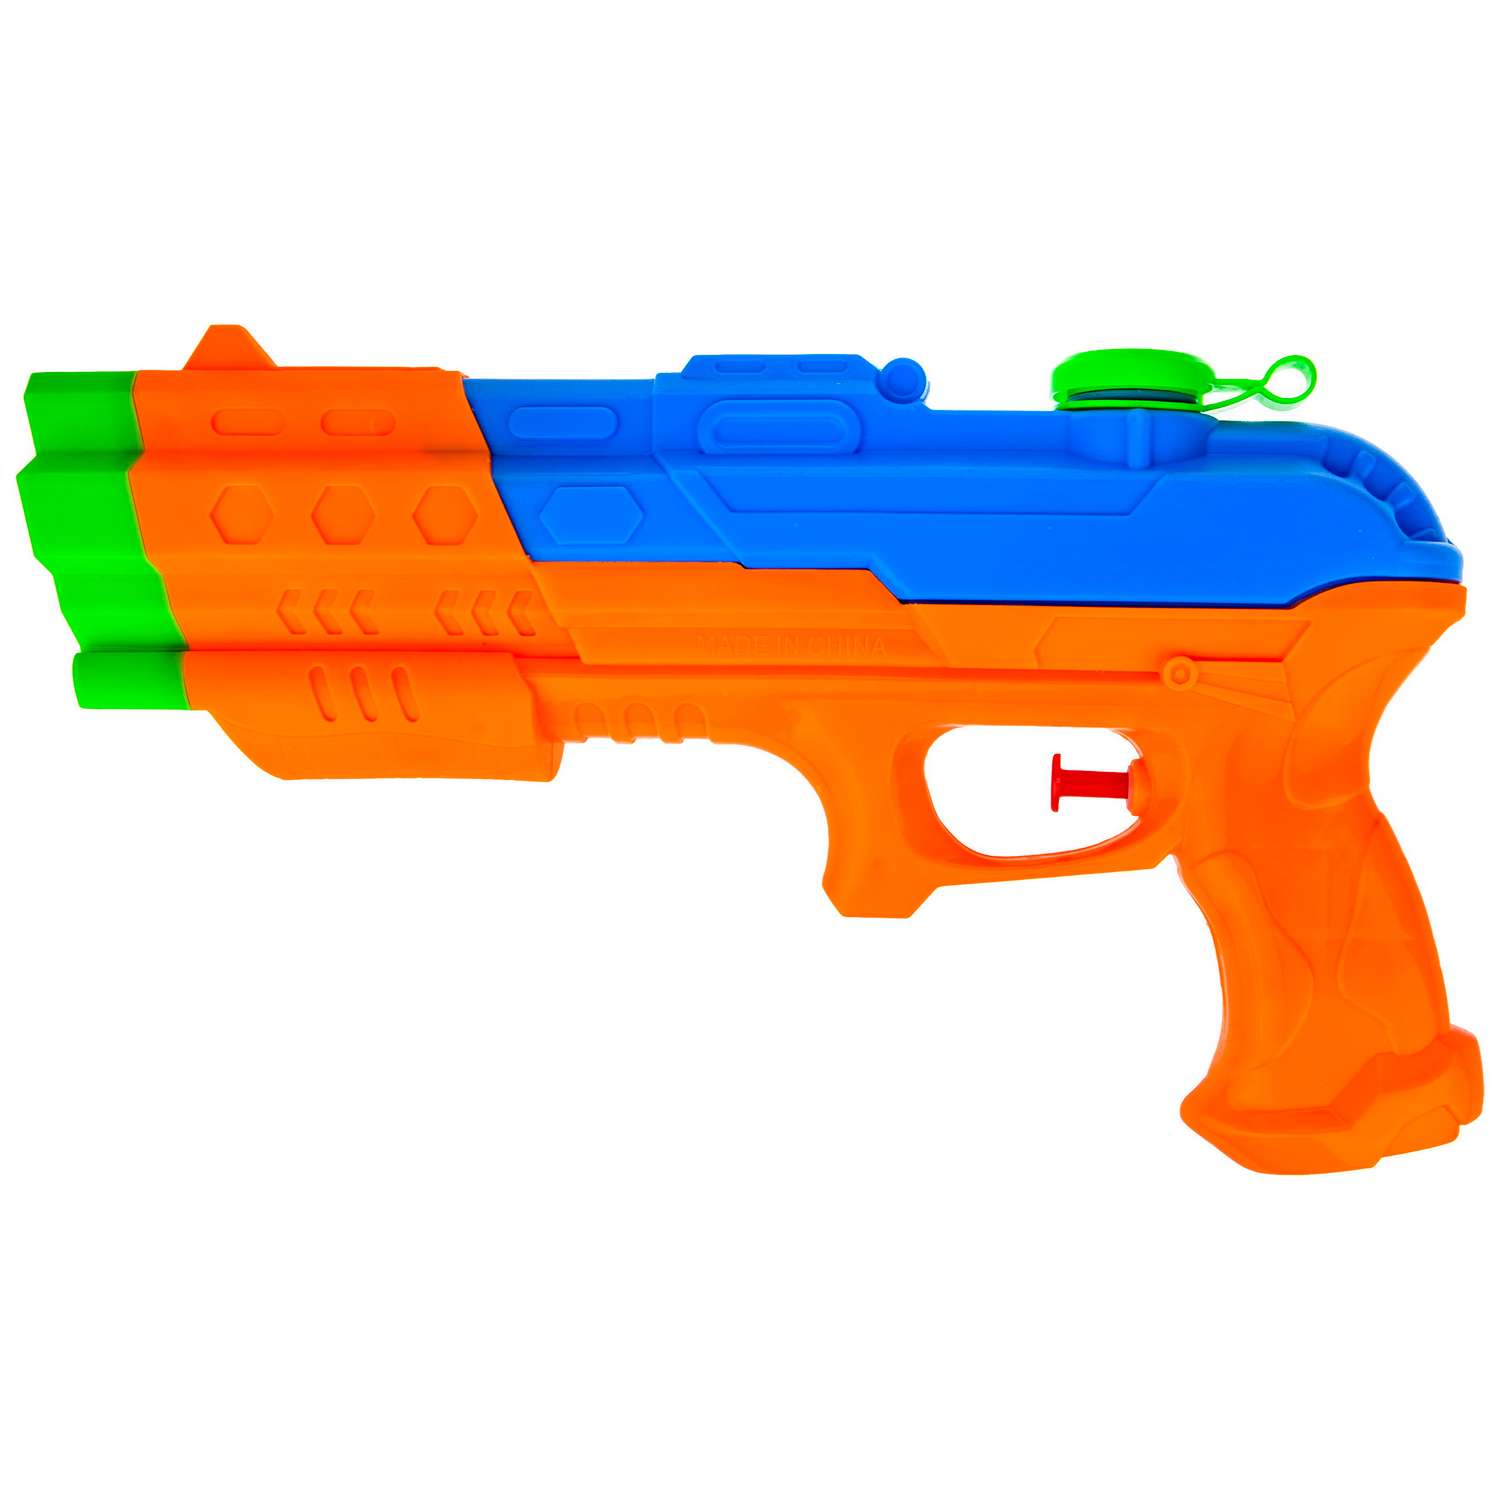 Водное оружие Aqua мания Пистолет оранжево-синий - фото 1